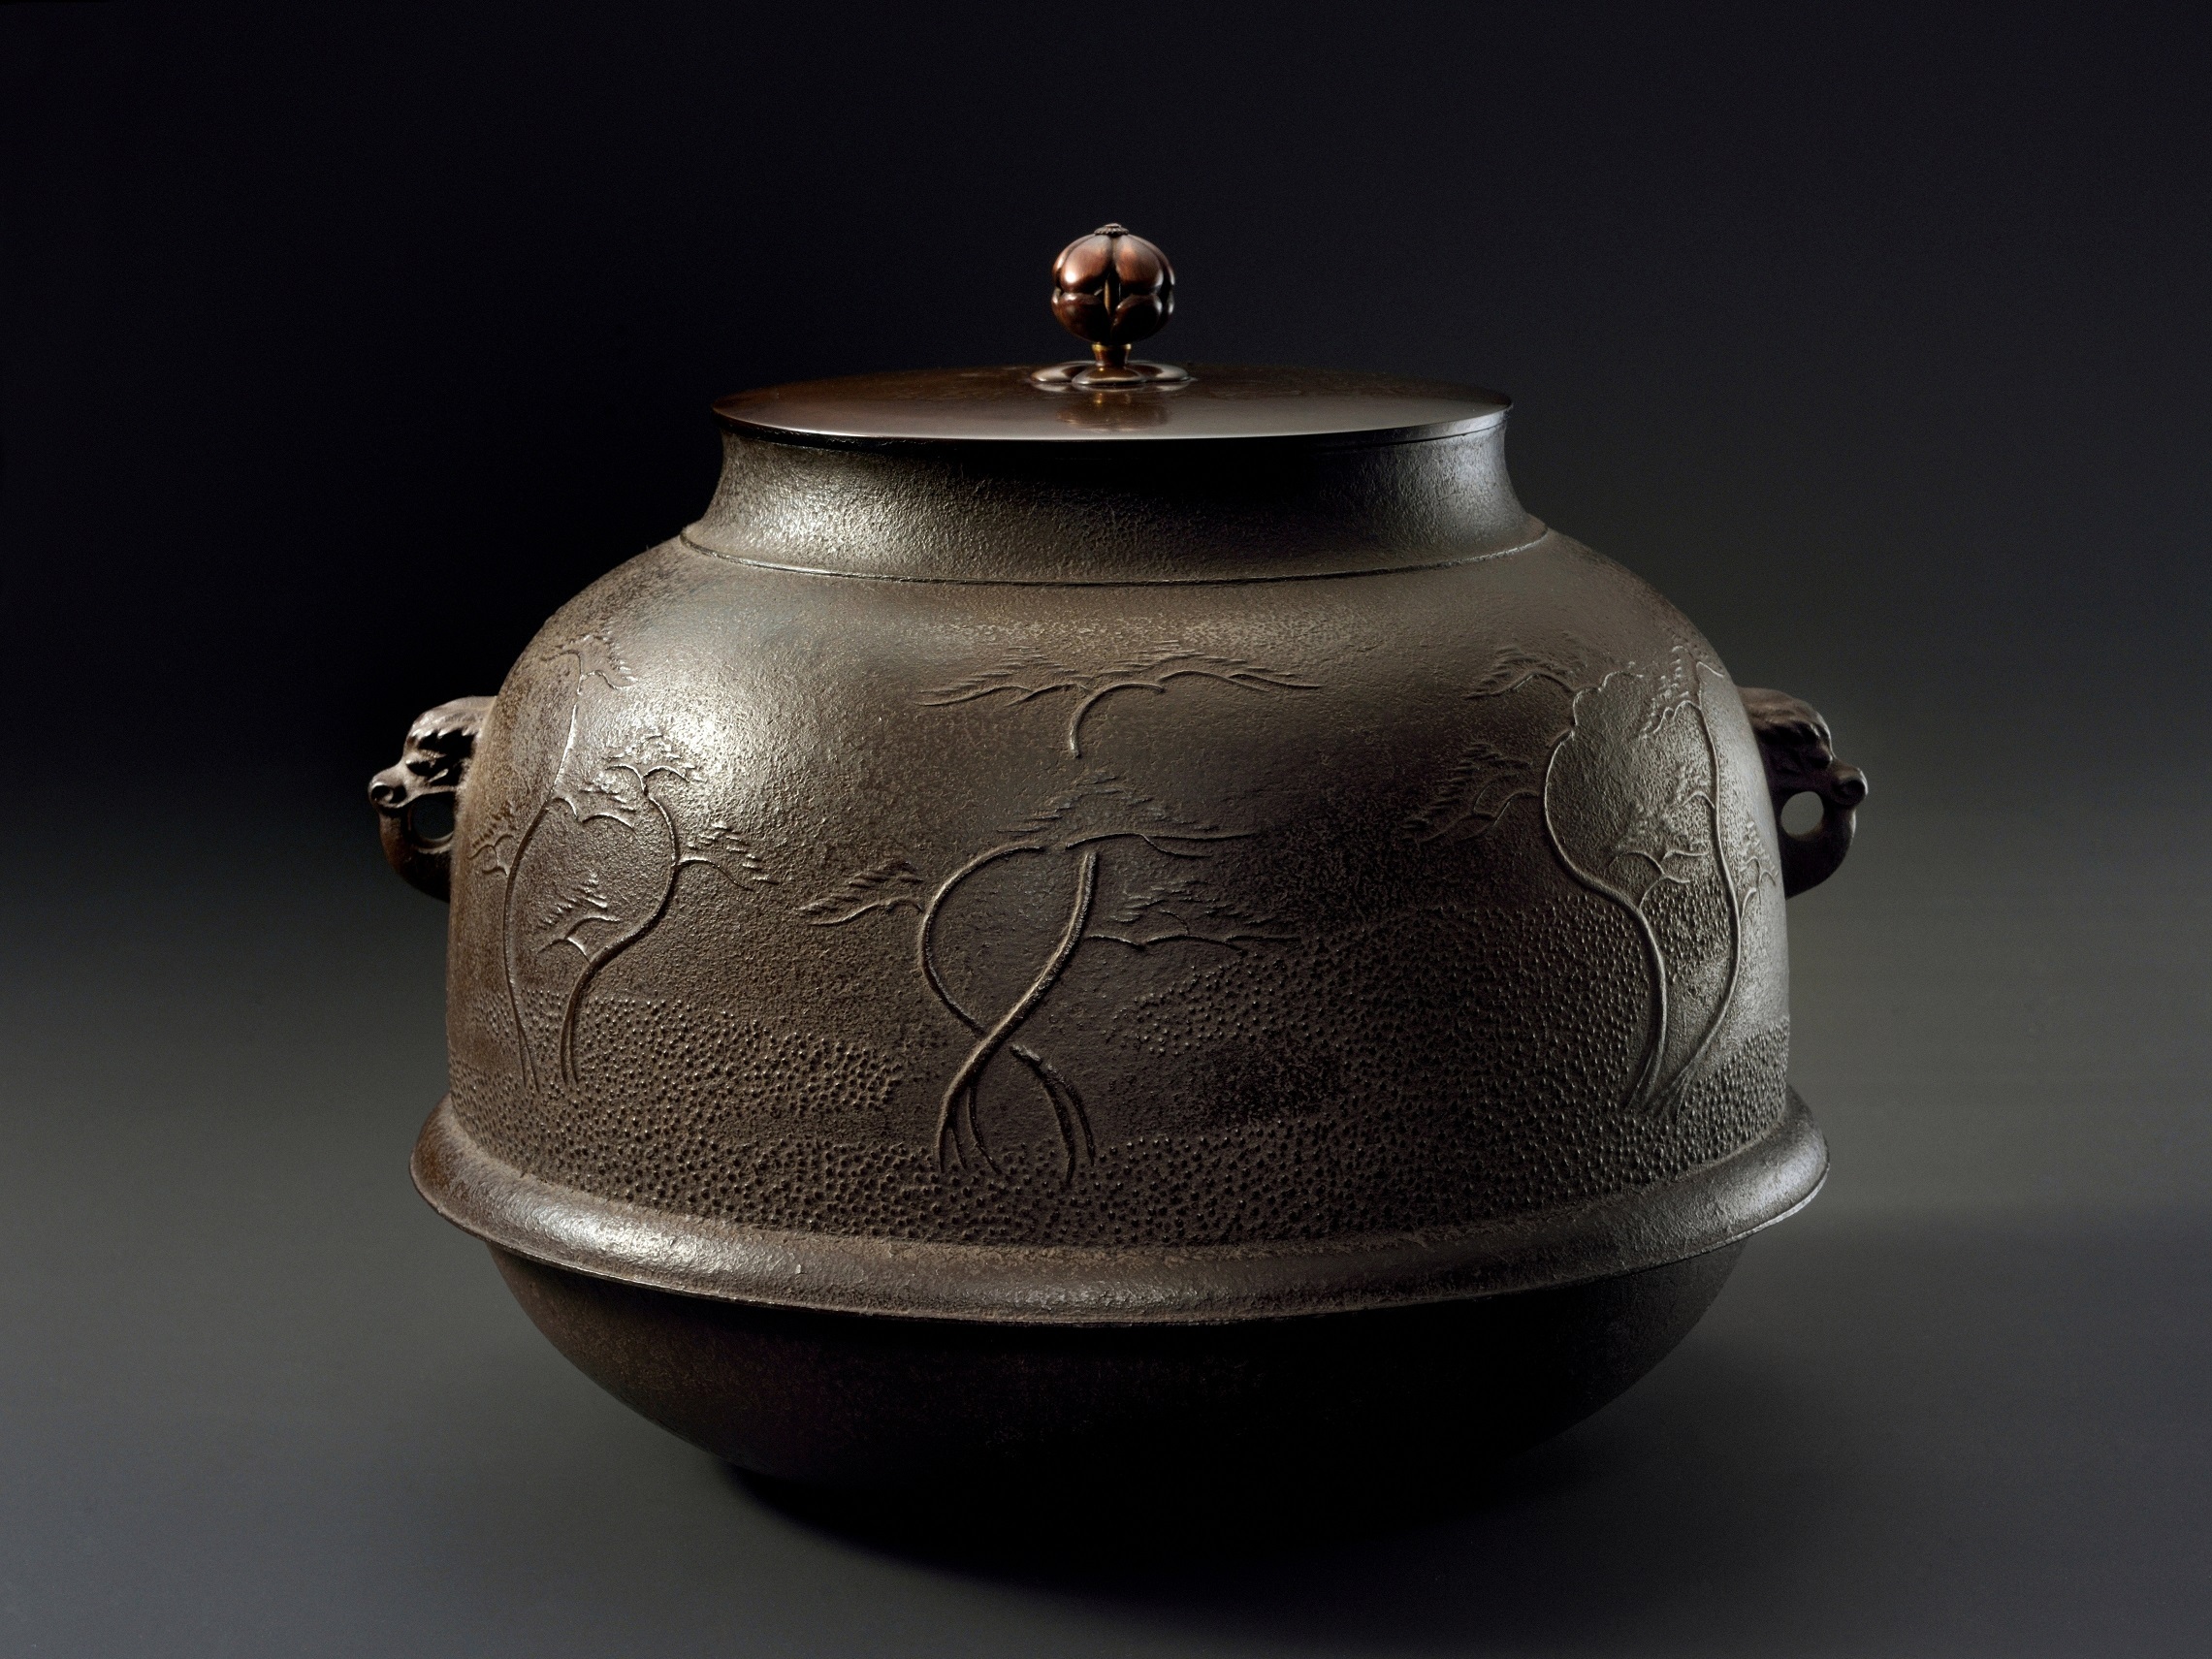 「浜松図真形釜」。東京国立博物館が所蔵する重要文化財指定品を元に、当初の姿に復元した